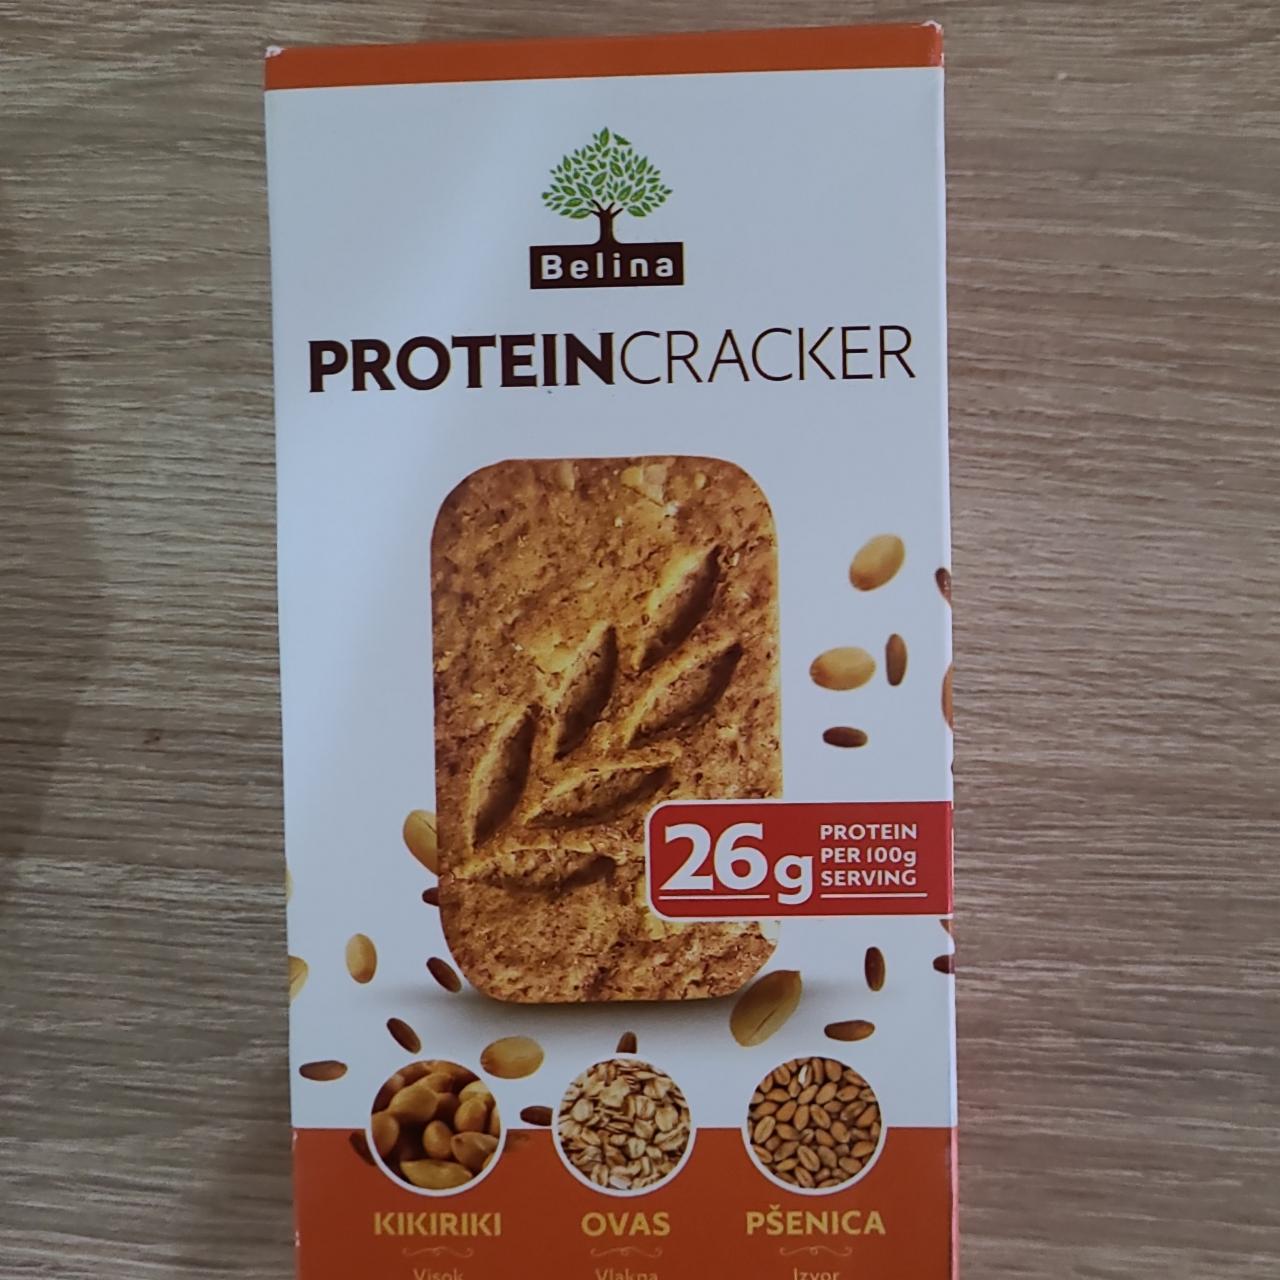 Фото - Печенье протеиновое protein cracker (арахис овес пшеница) Belina